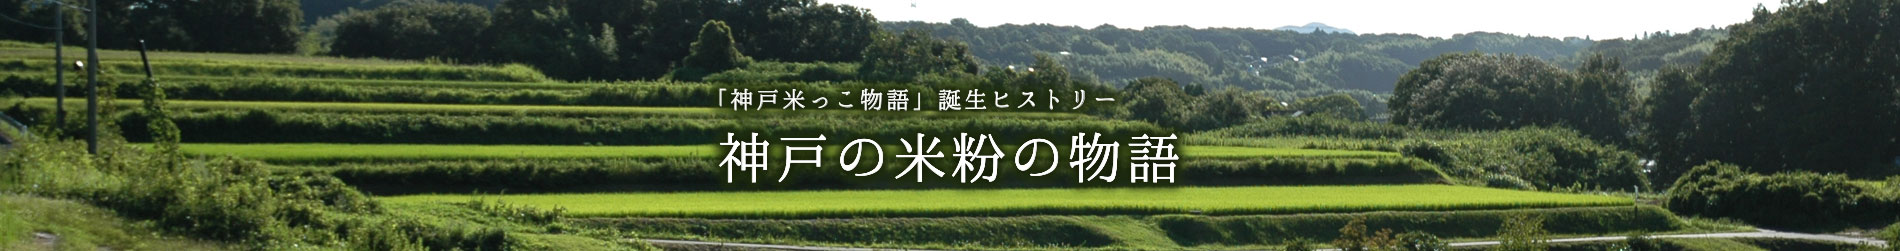 神戸米っこ物語 誕生ヒストリー「神戸の米粉の物語」